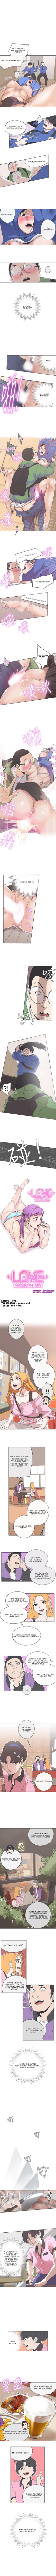 Love Navigation image